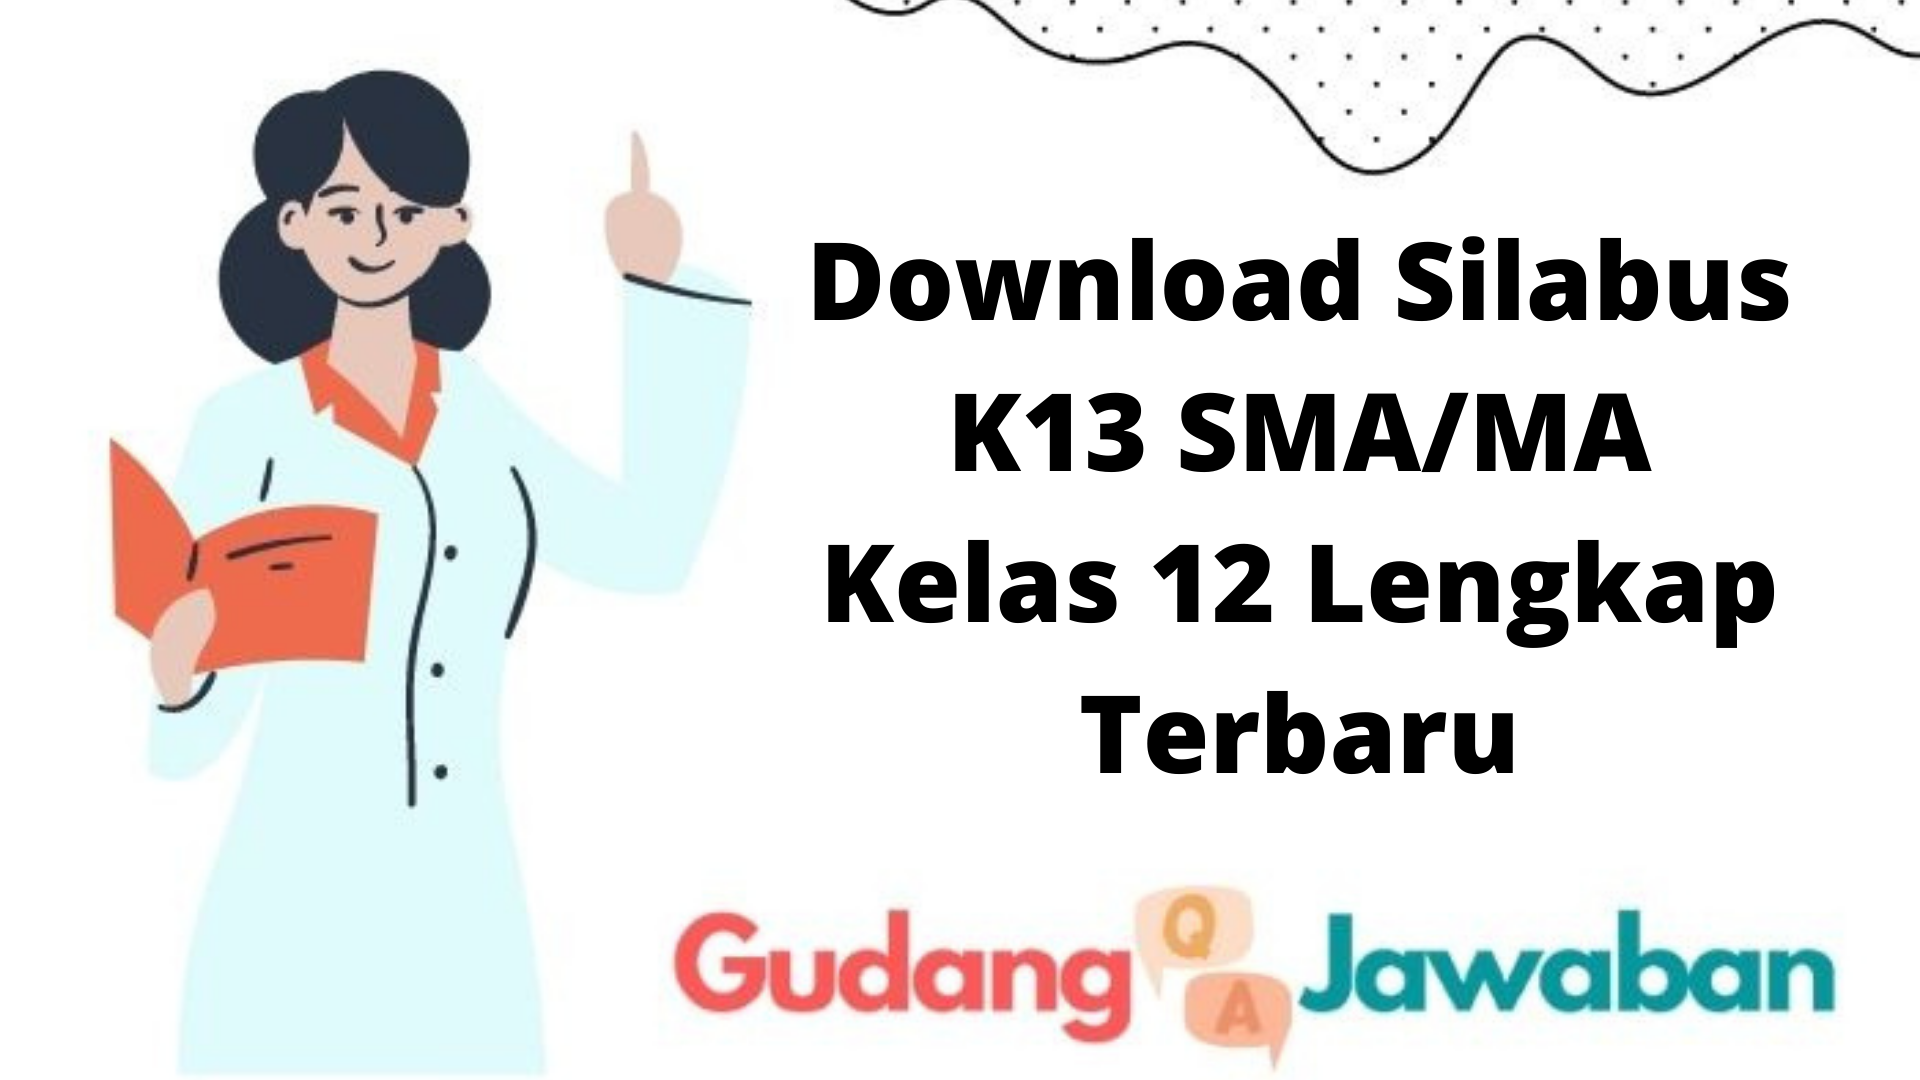 Download Silabus K13 SMA/MA Kelas 12 Lengkap Terbaru